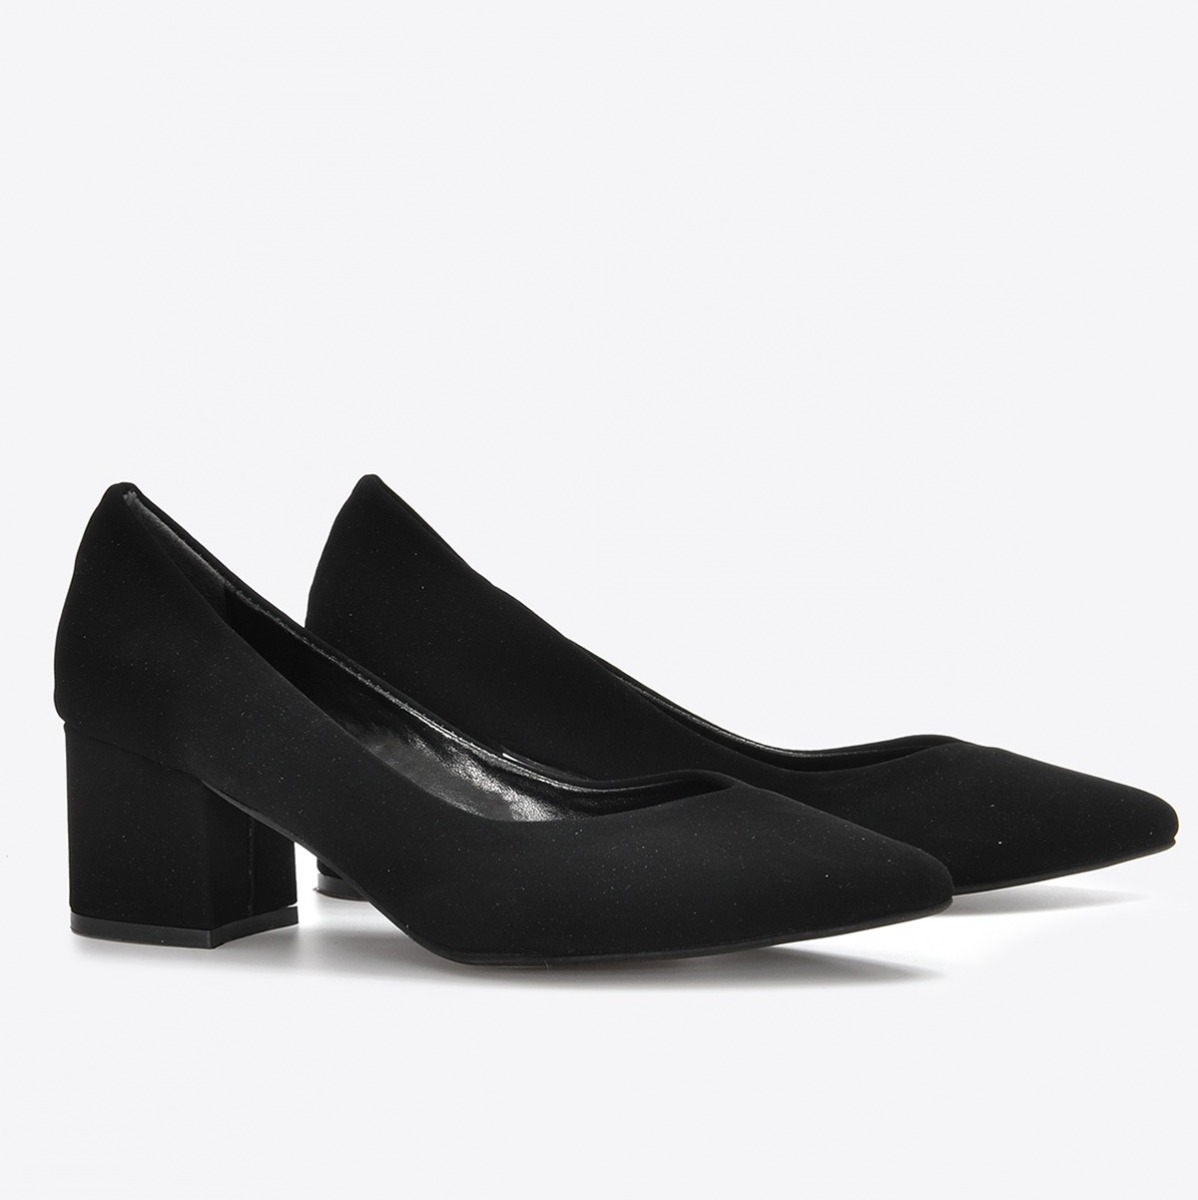 Flo Kadın Siyah Nubuk Klasik Topuklu Ayakkabı VZN21-040Y. 4